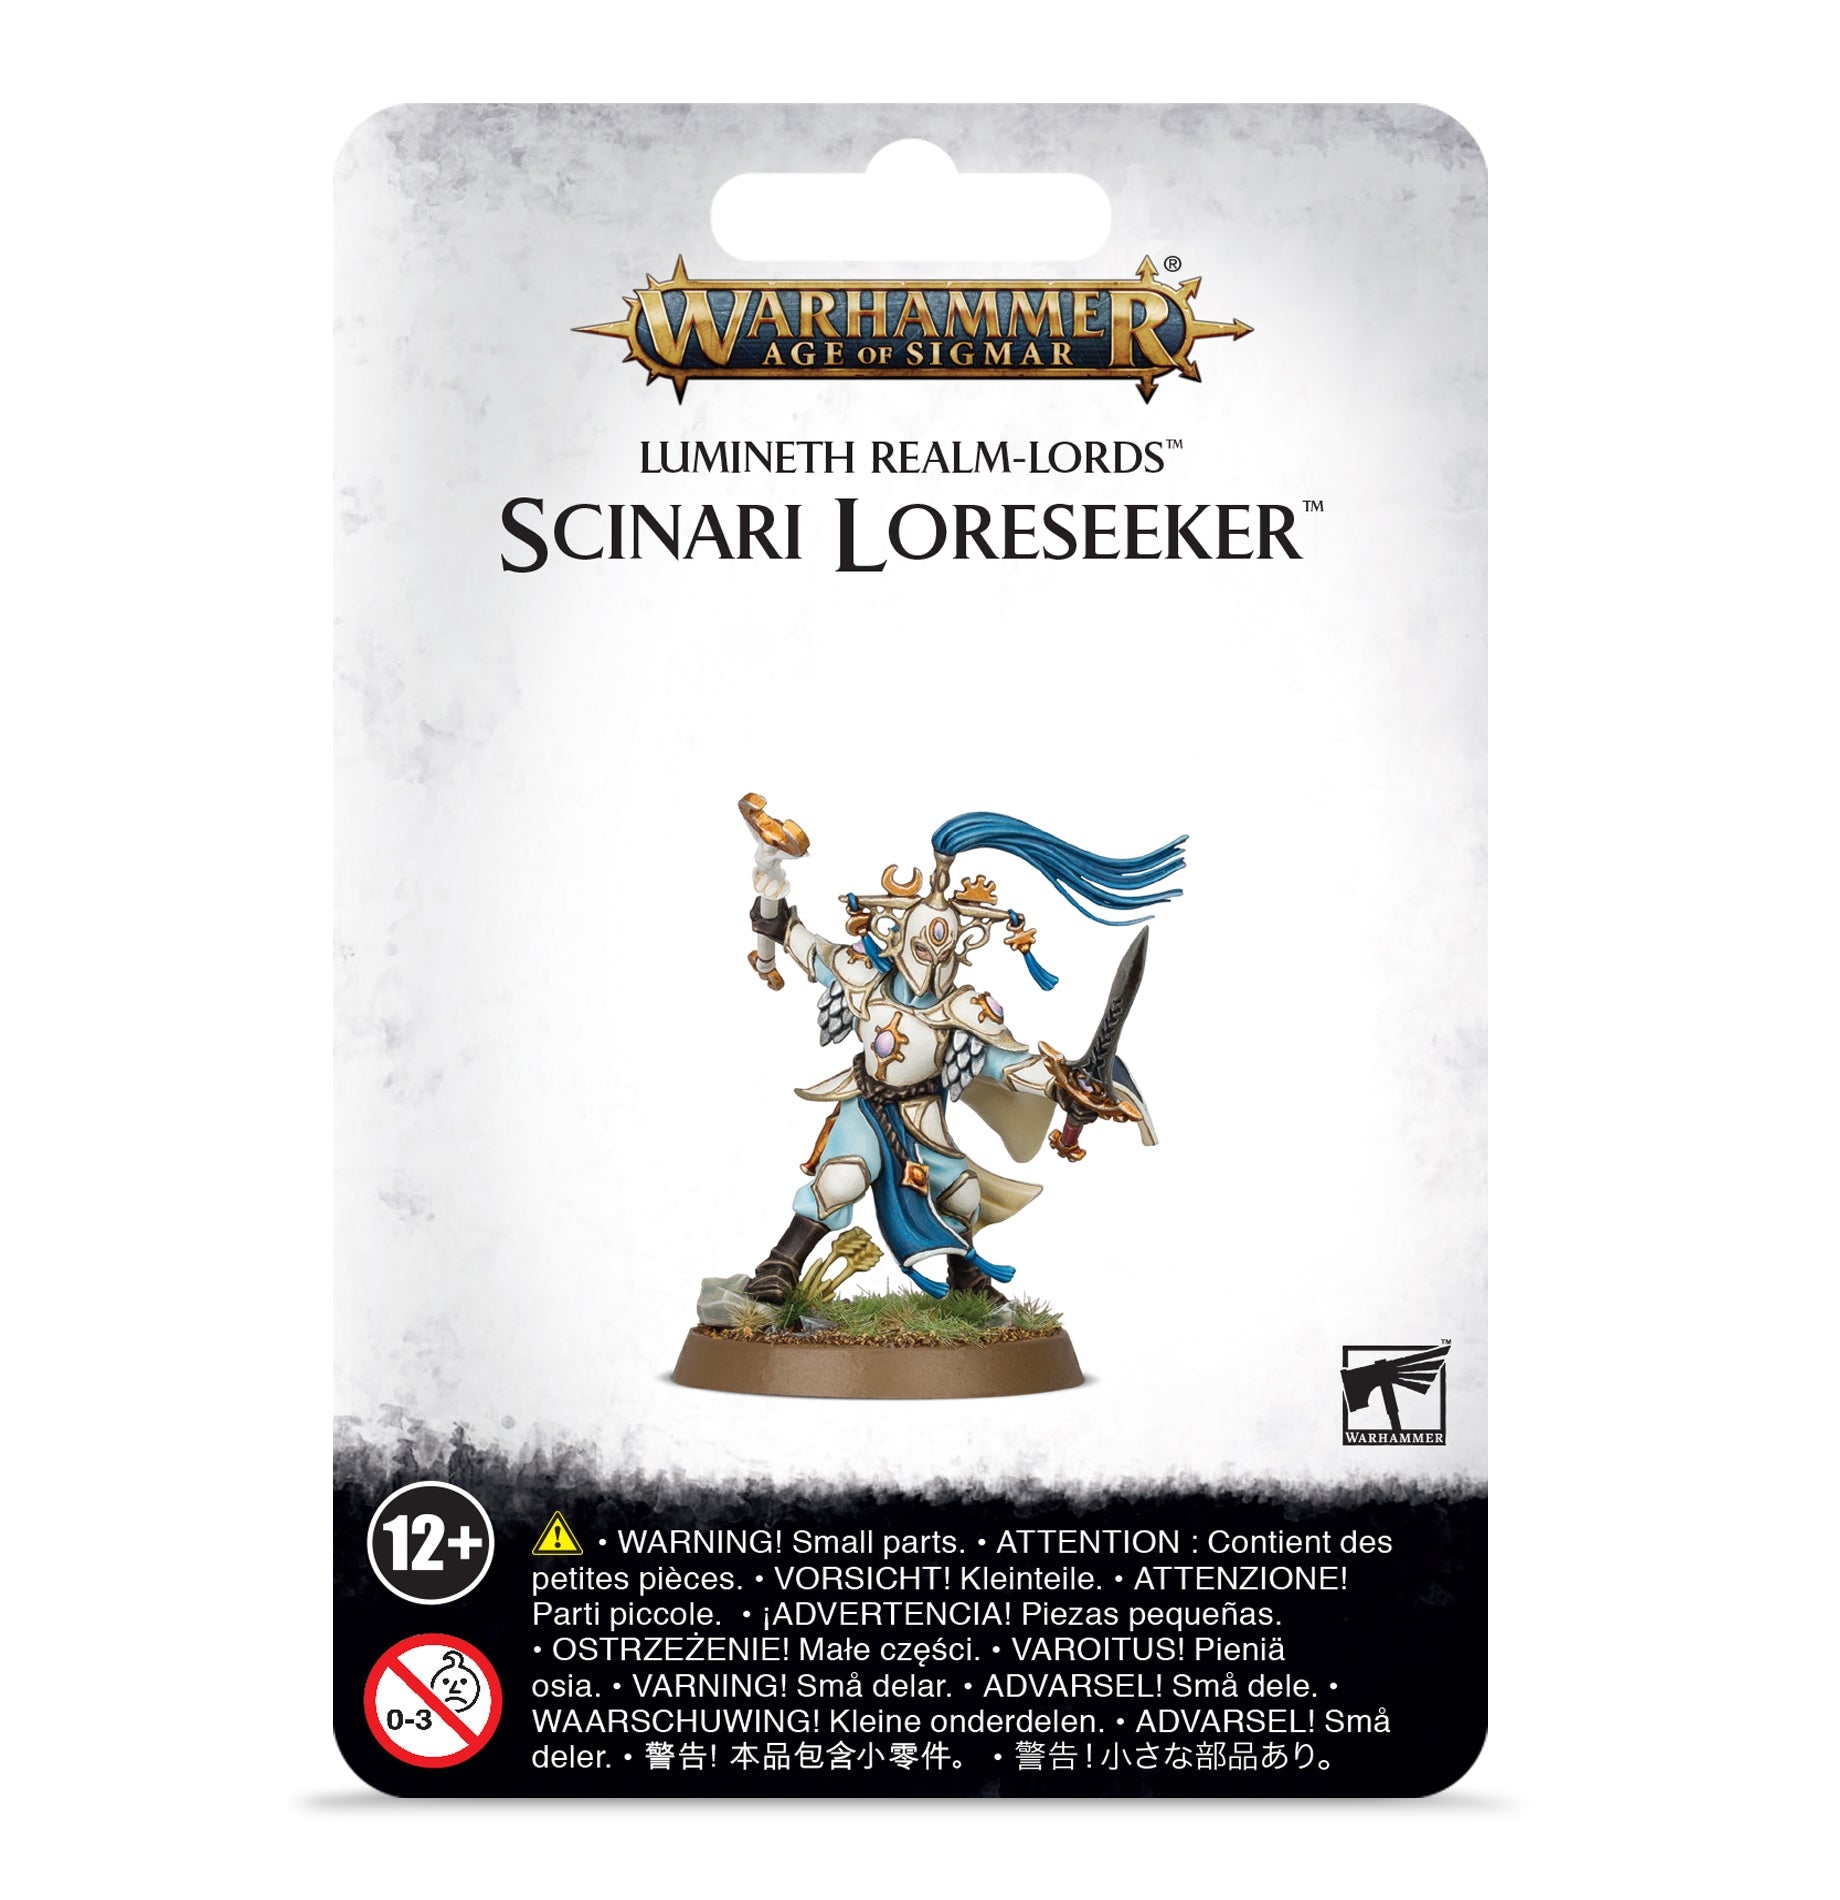 Lumineth Realm-lords: Scinari Loreseeker - Gamescape